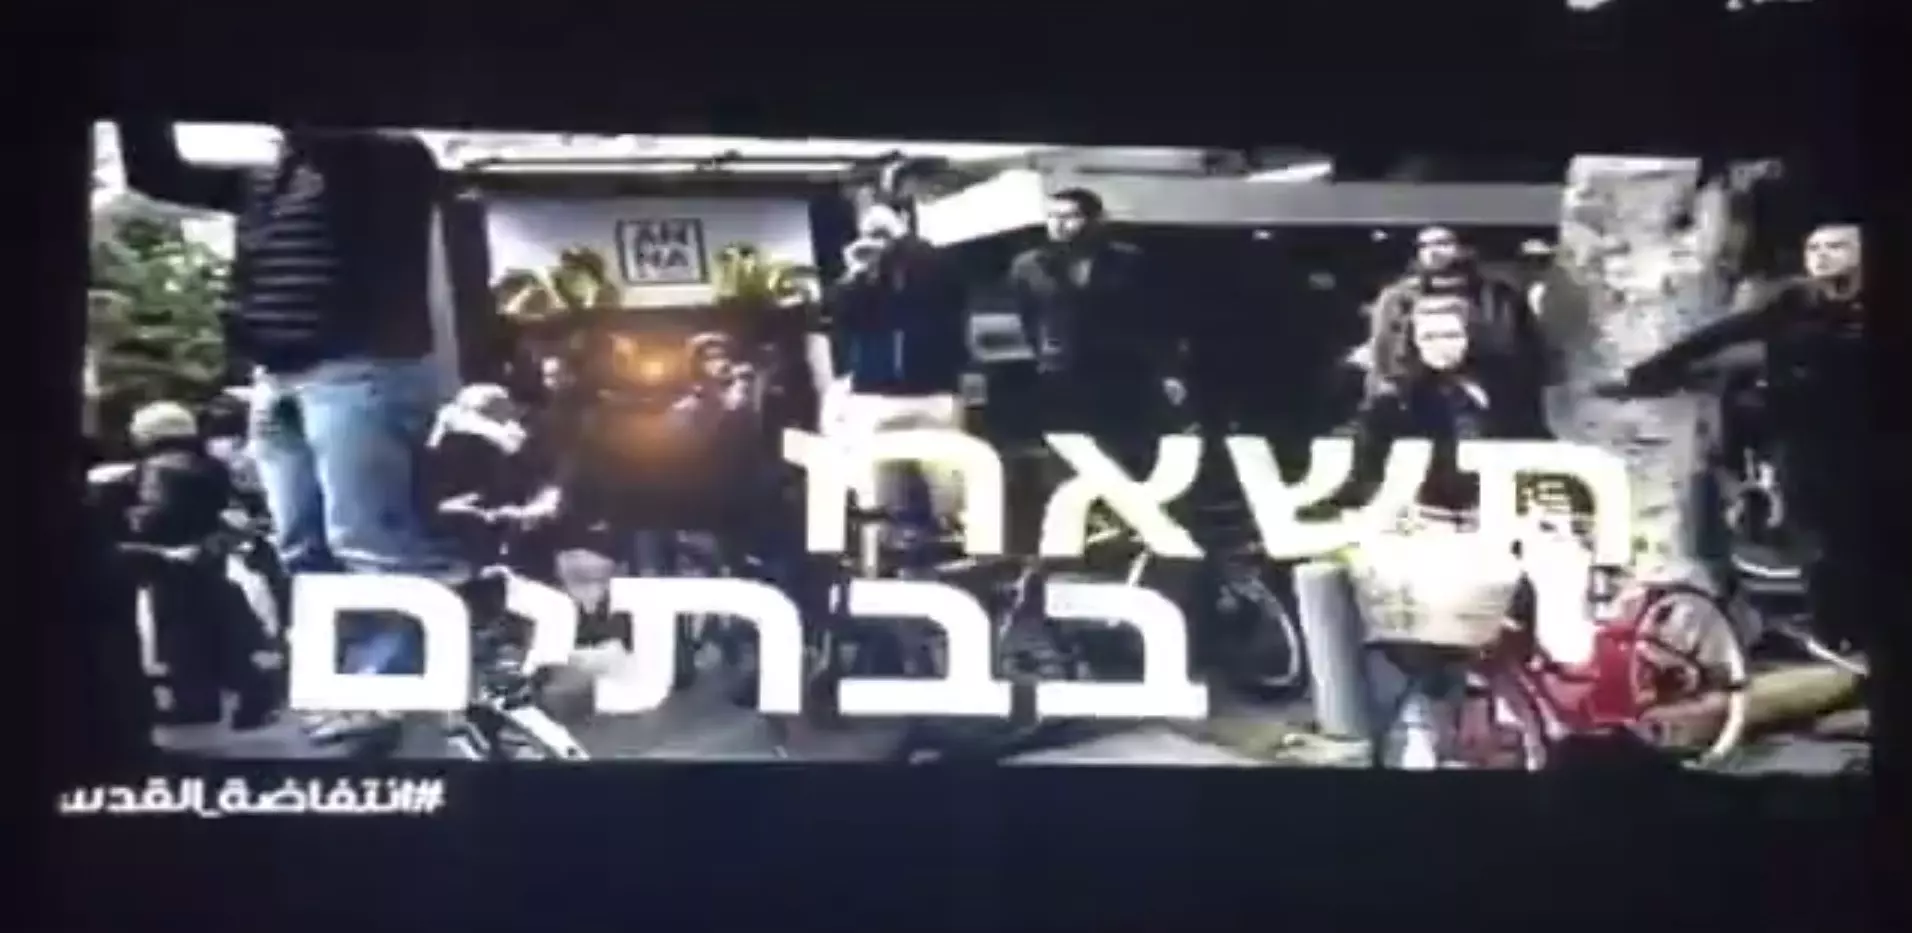 סרטון של חמאס בחדשות ערוץ 2 בלוויין, 11 במרץ 2016